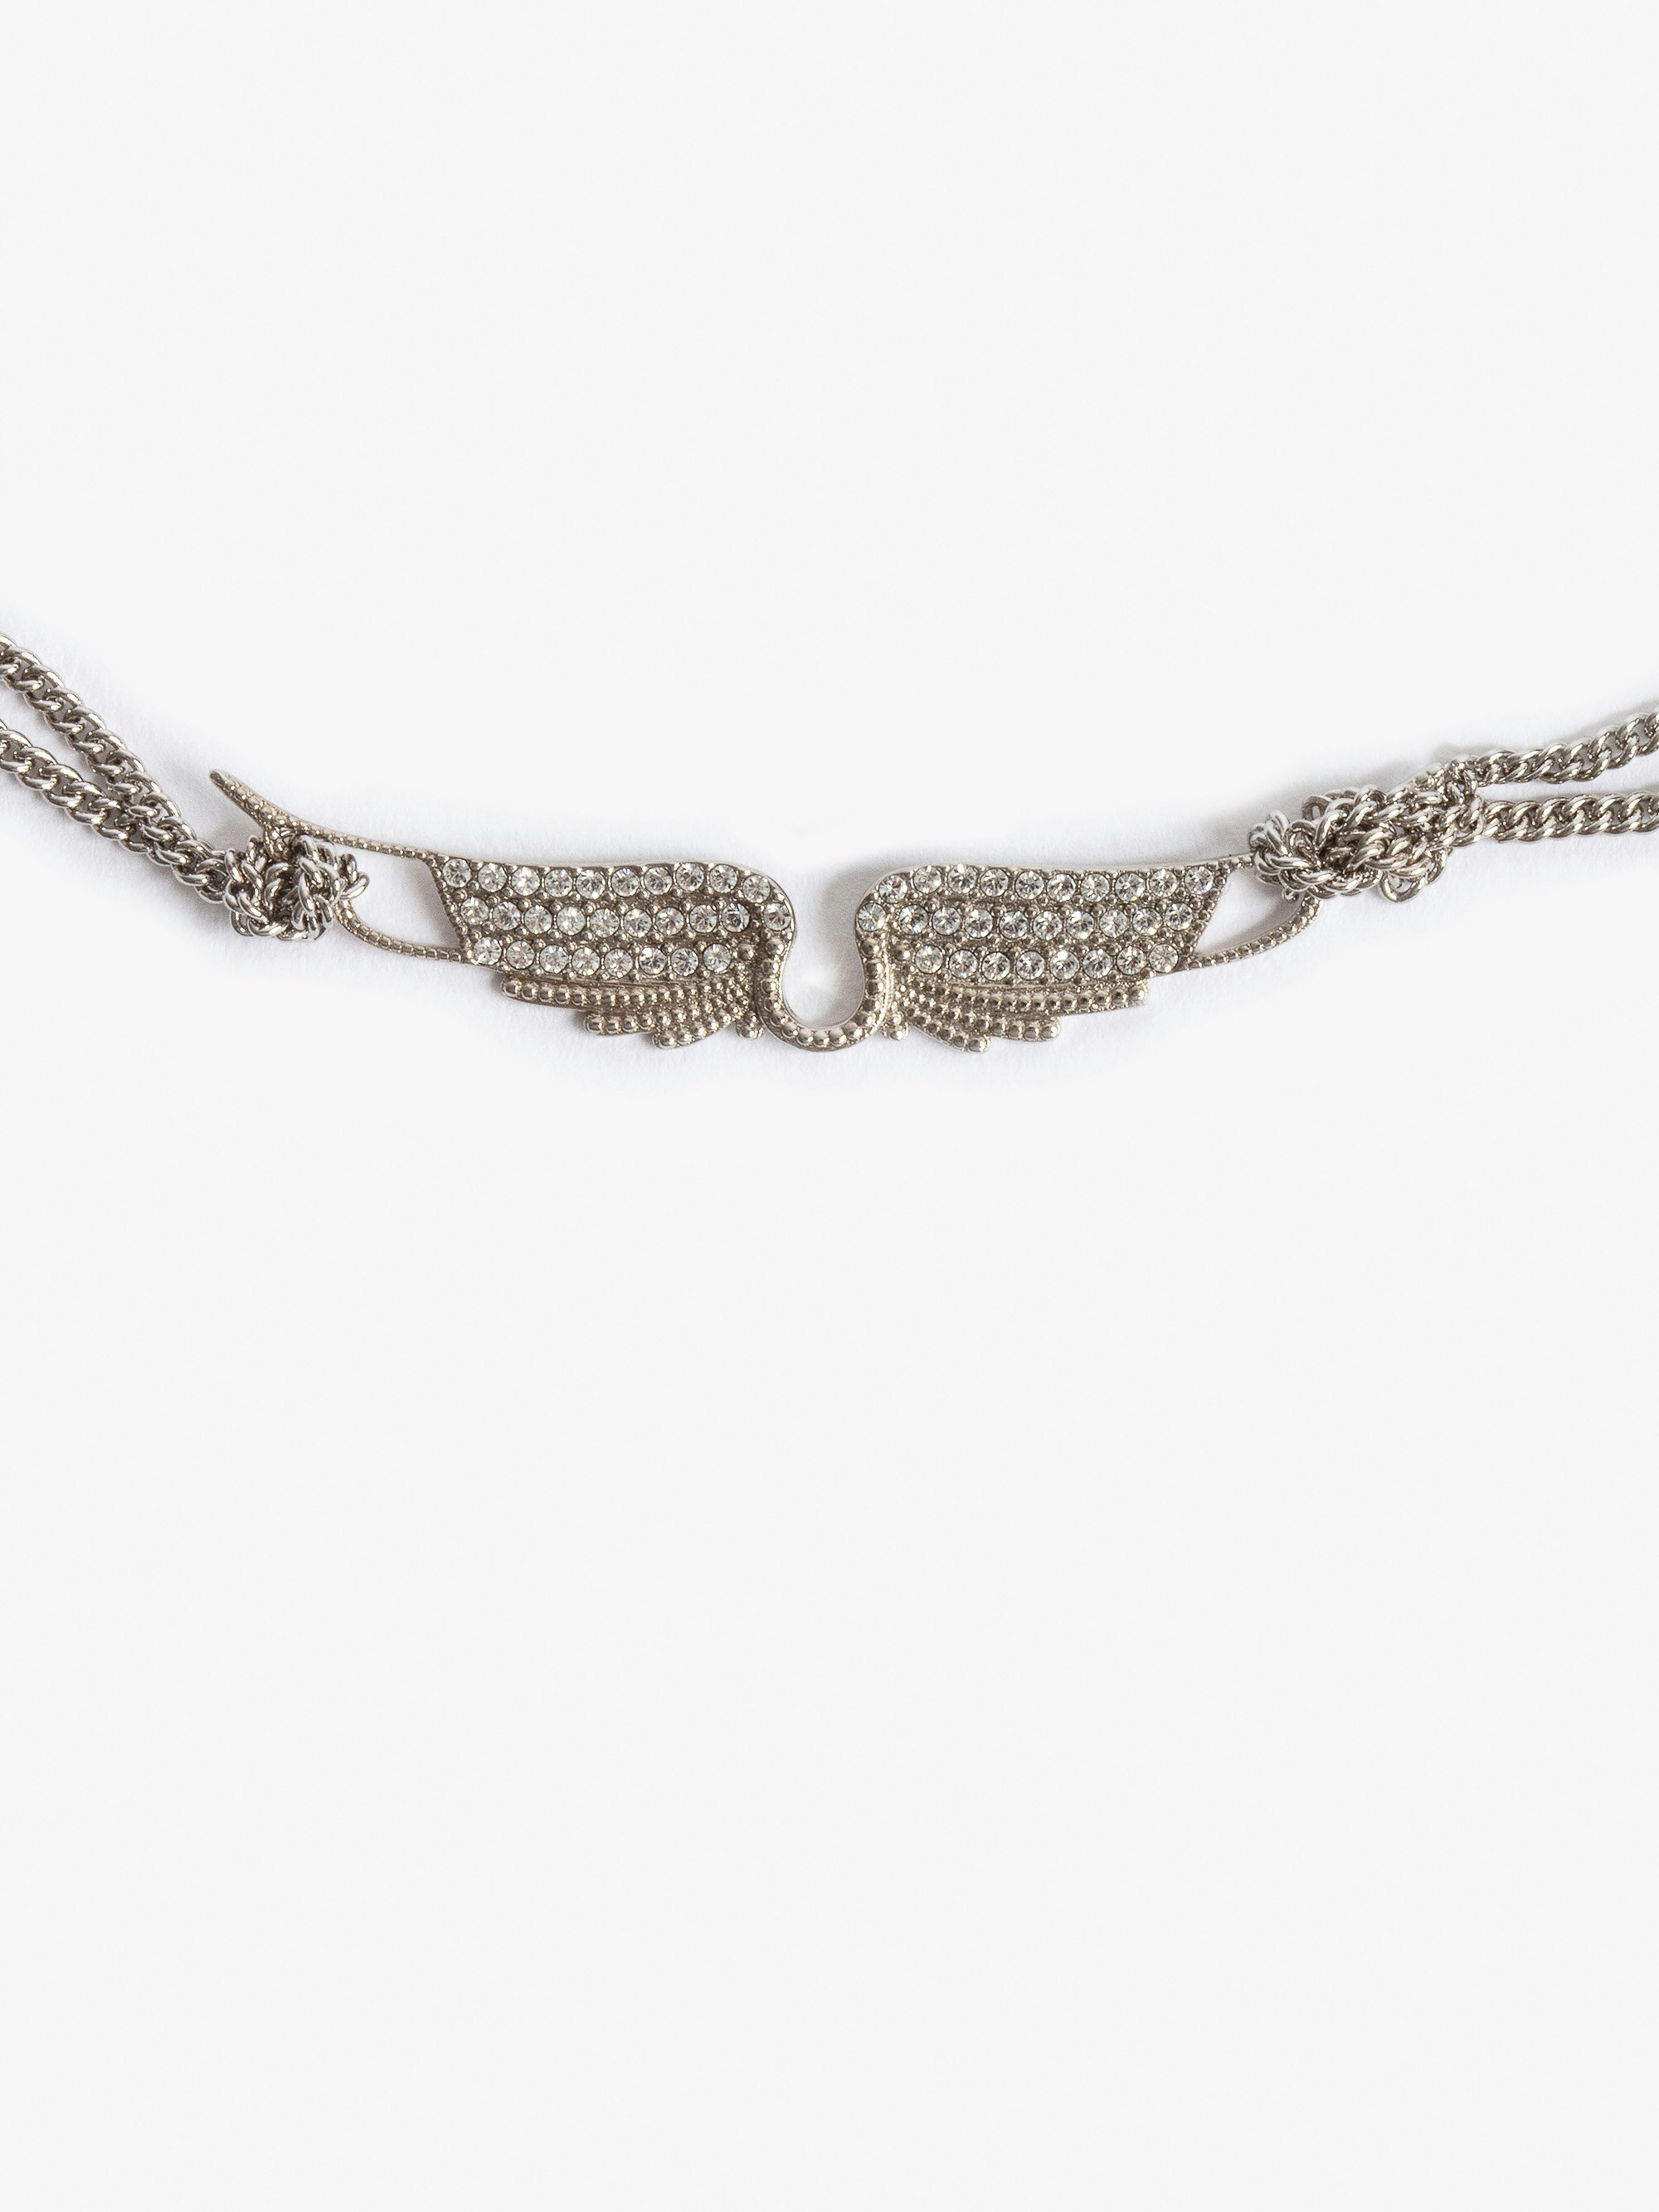 Halskette Rock Chocker - Kurze Halskette aus silberfarbenem Messing mit kristallbesetztem Flügelanhänger.